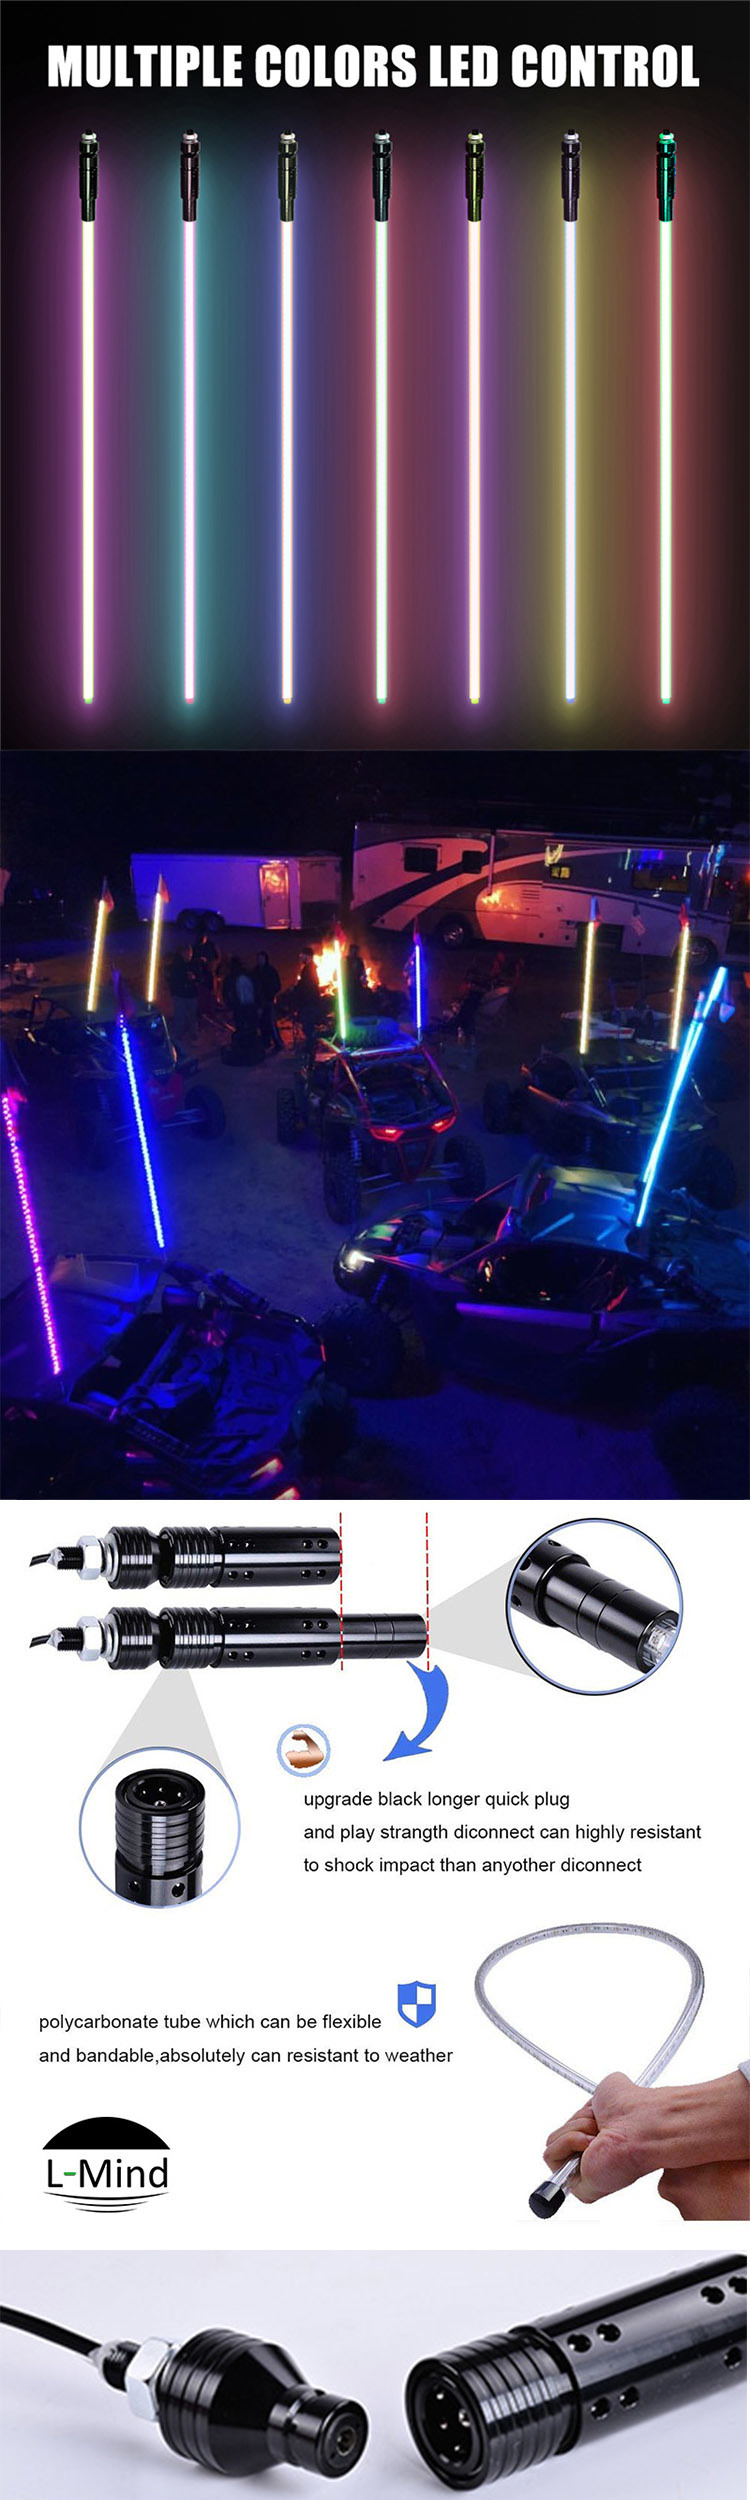 6FT 1.8m Multi Colors RGB Fiber Optic Whip Light LED Antenna Light Remote Control Pickup Truck 4X4